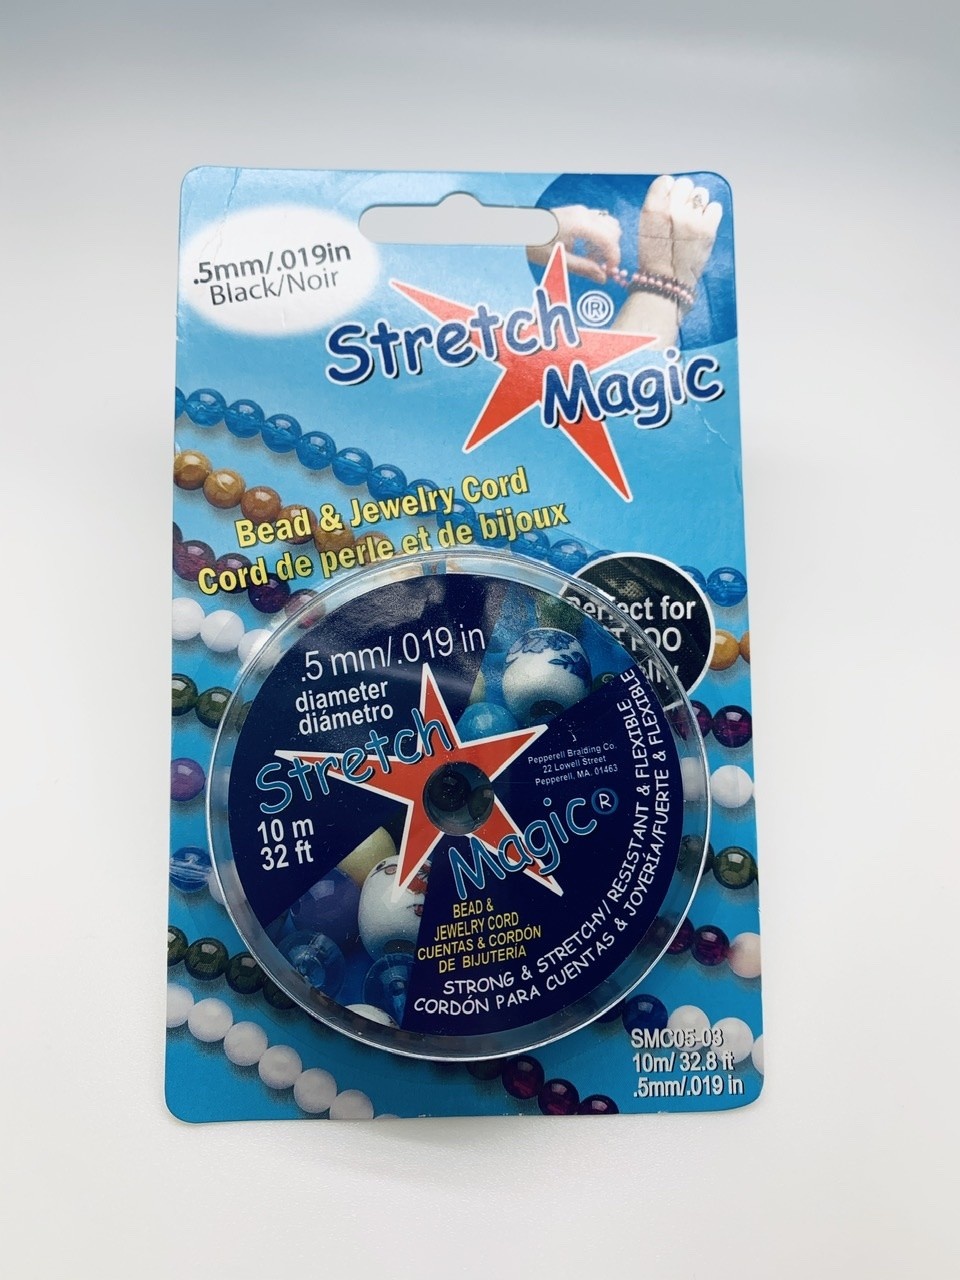 .5MM STRETCH MAGIC CORD- Black